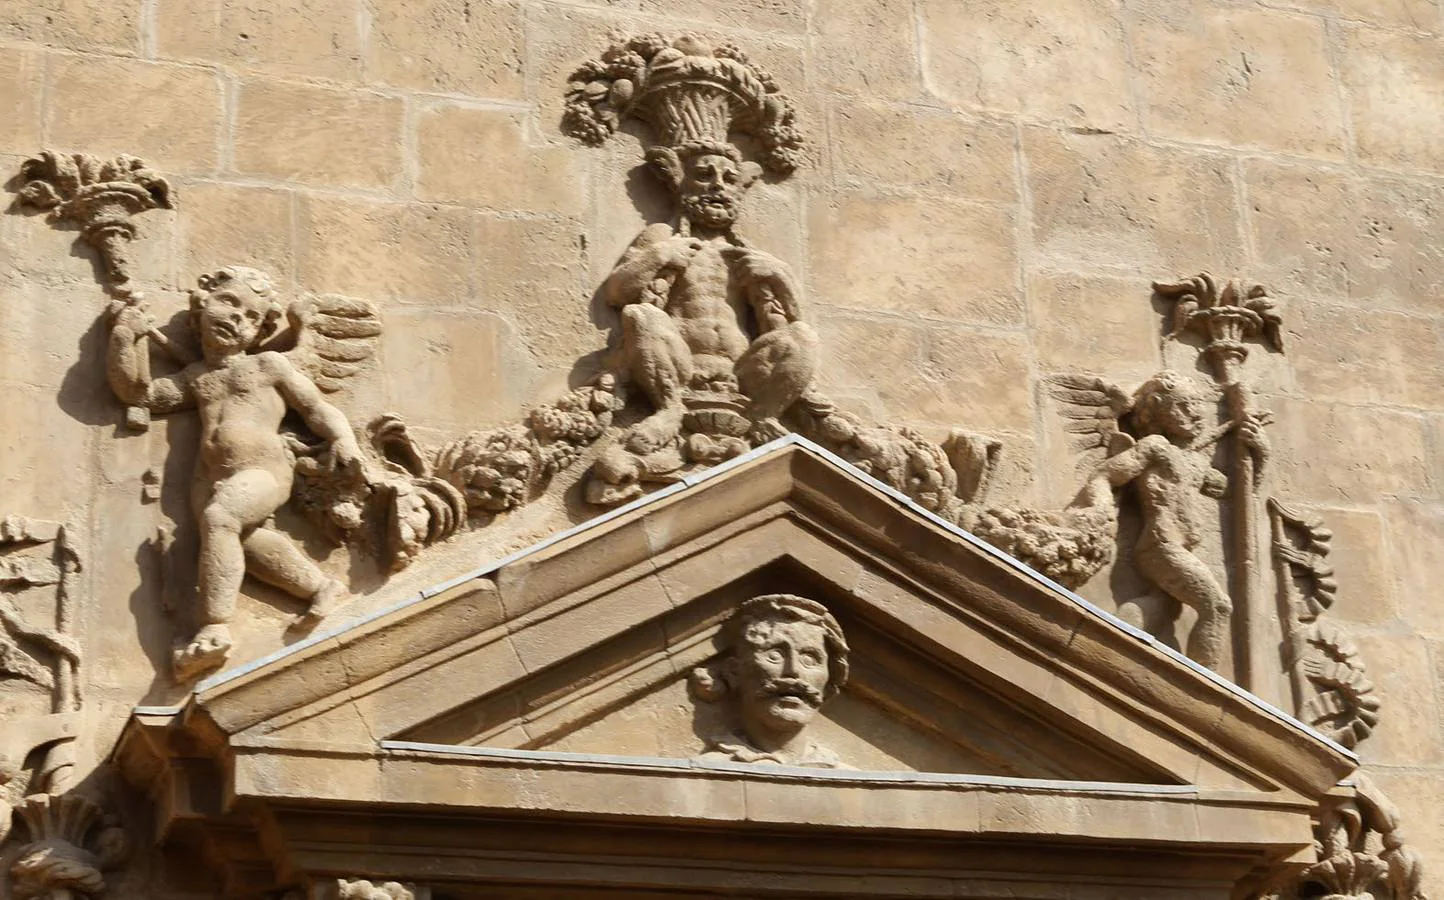 El 'Tío del bigote' tallado en la parte de la torre que da a los tejados, junto a la escultura conocida como 'el indio'.